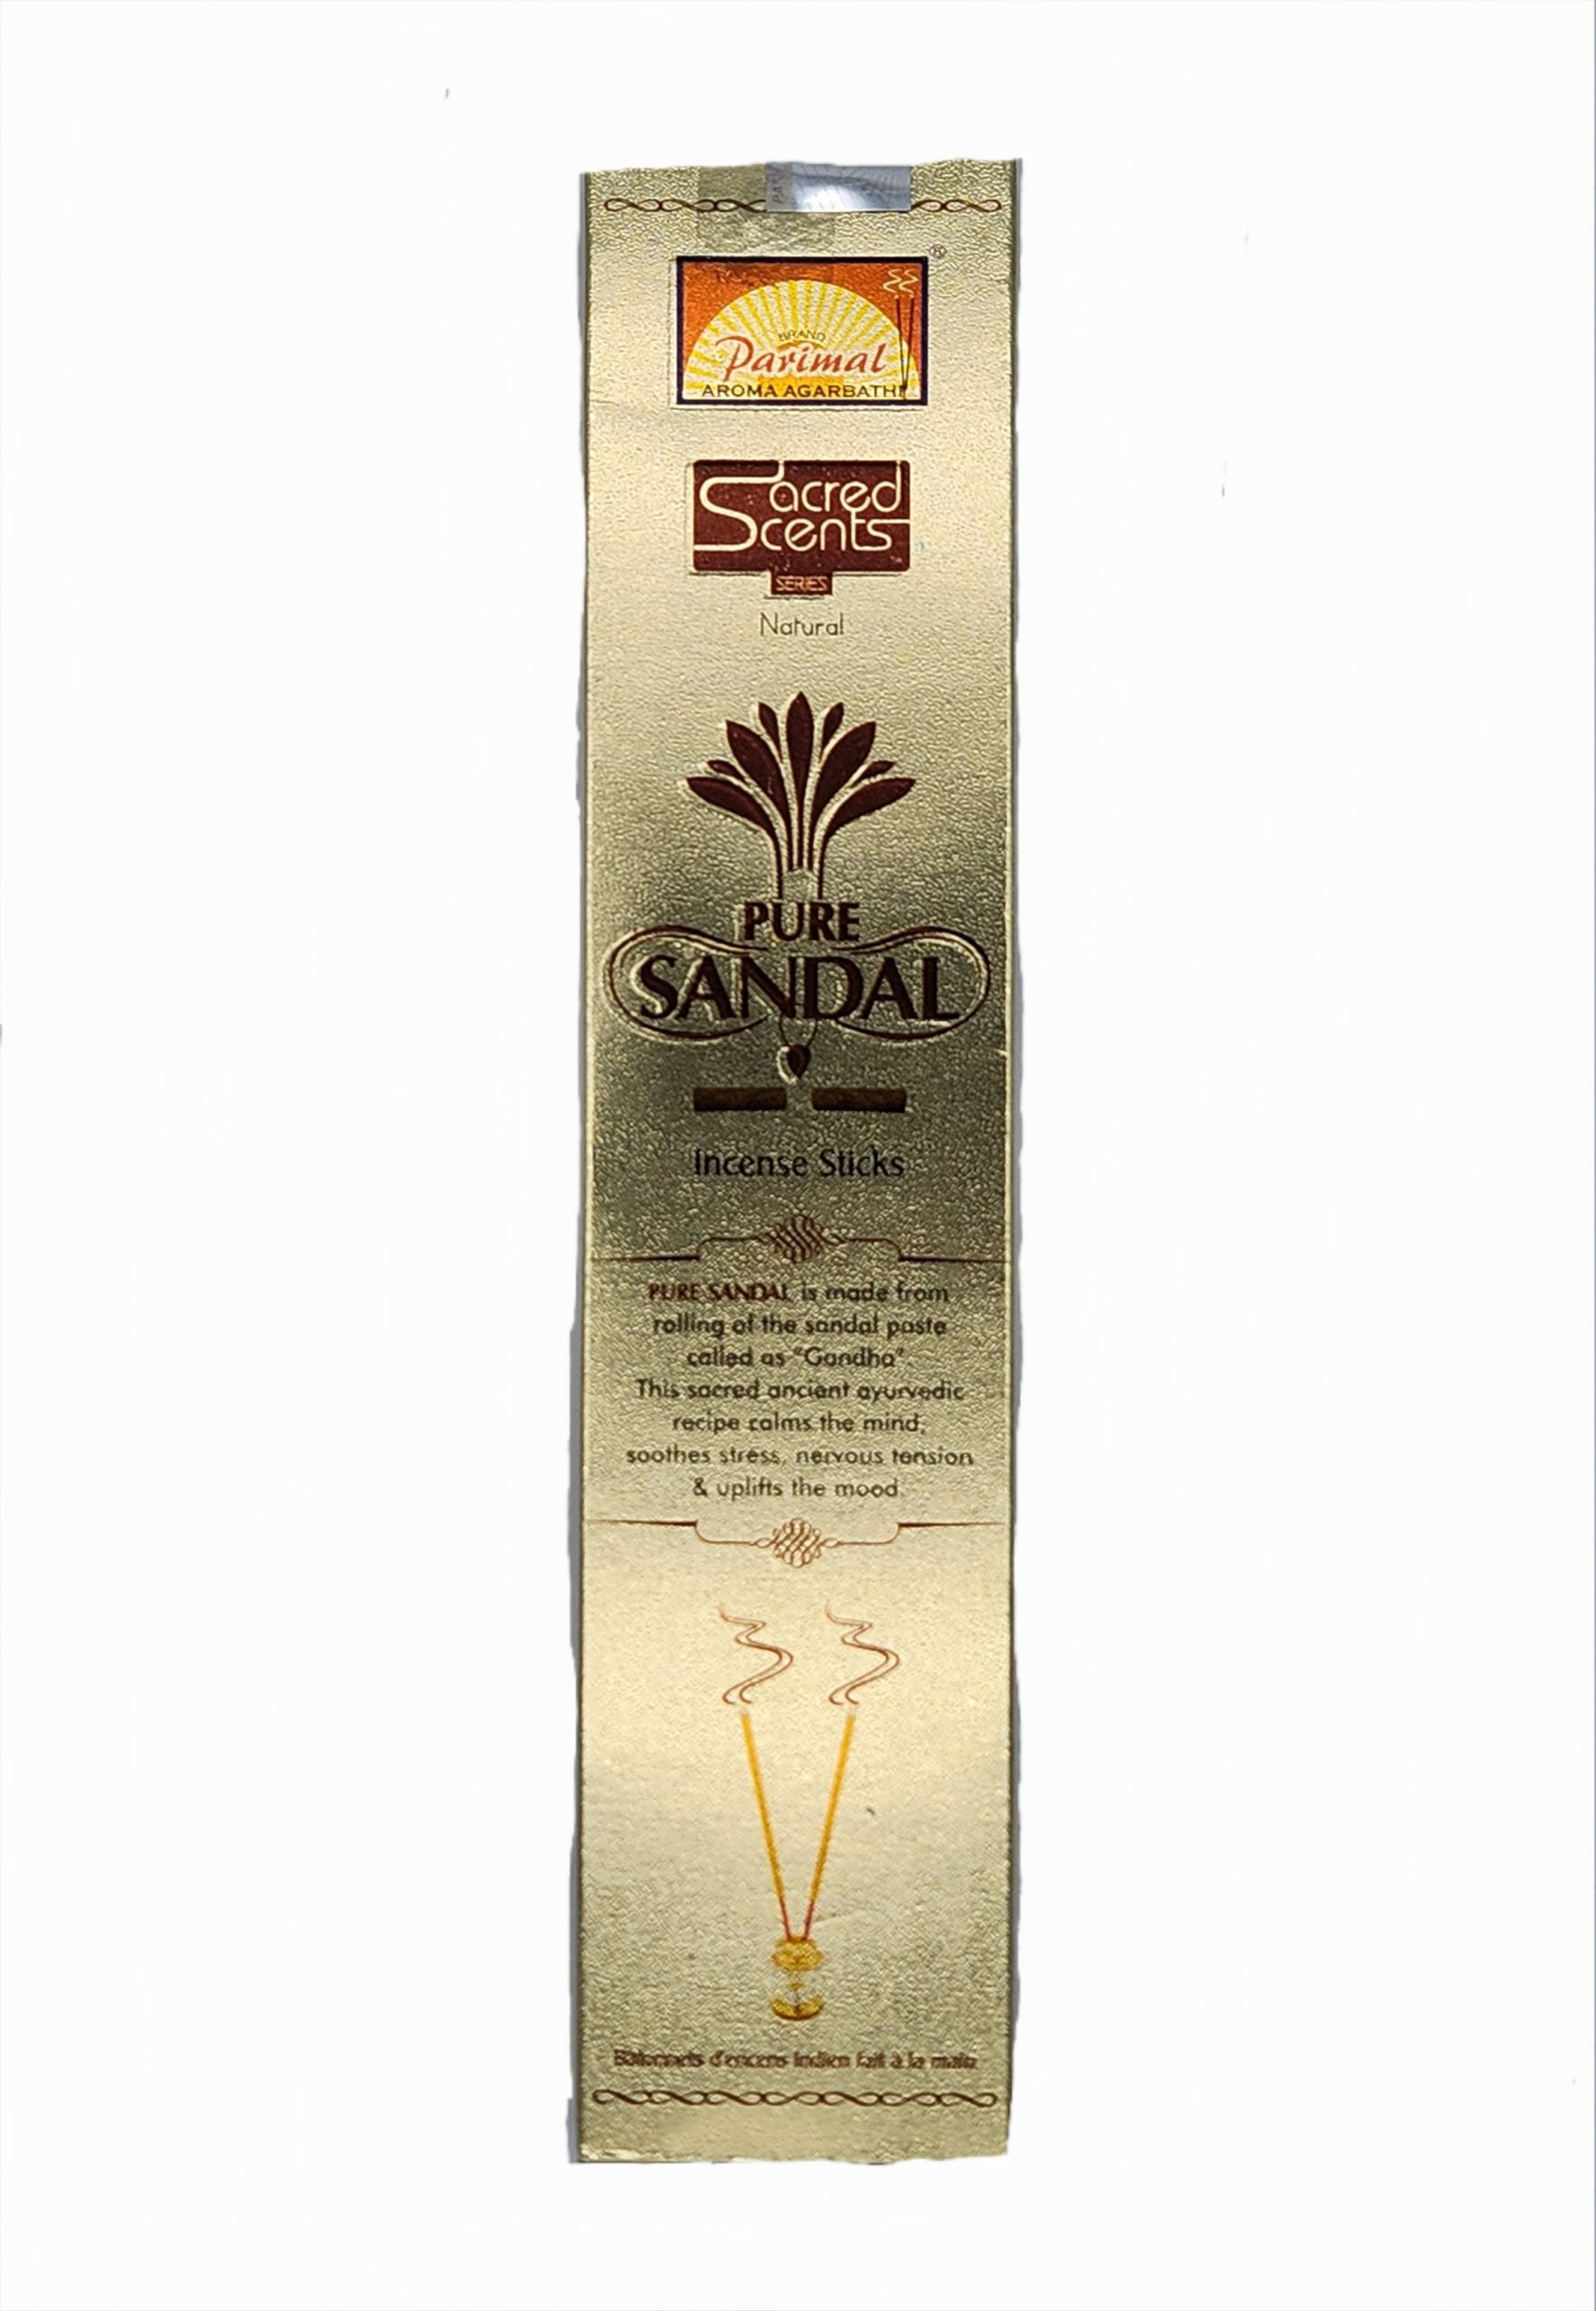 Santal - Bâtons d'encens Indien, traditionnels, artisanaux et naturels